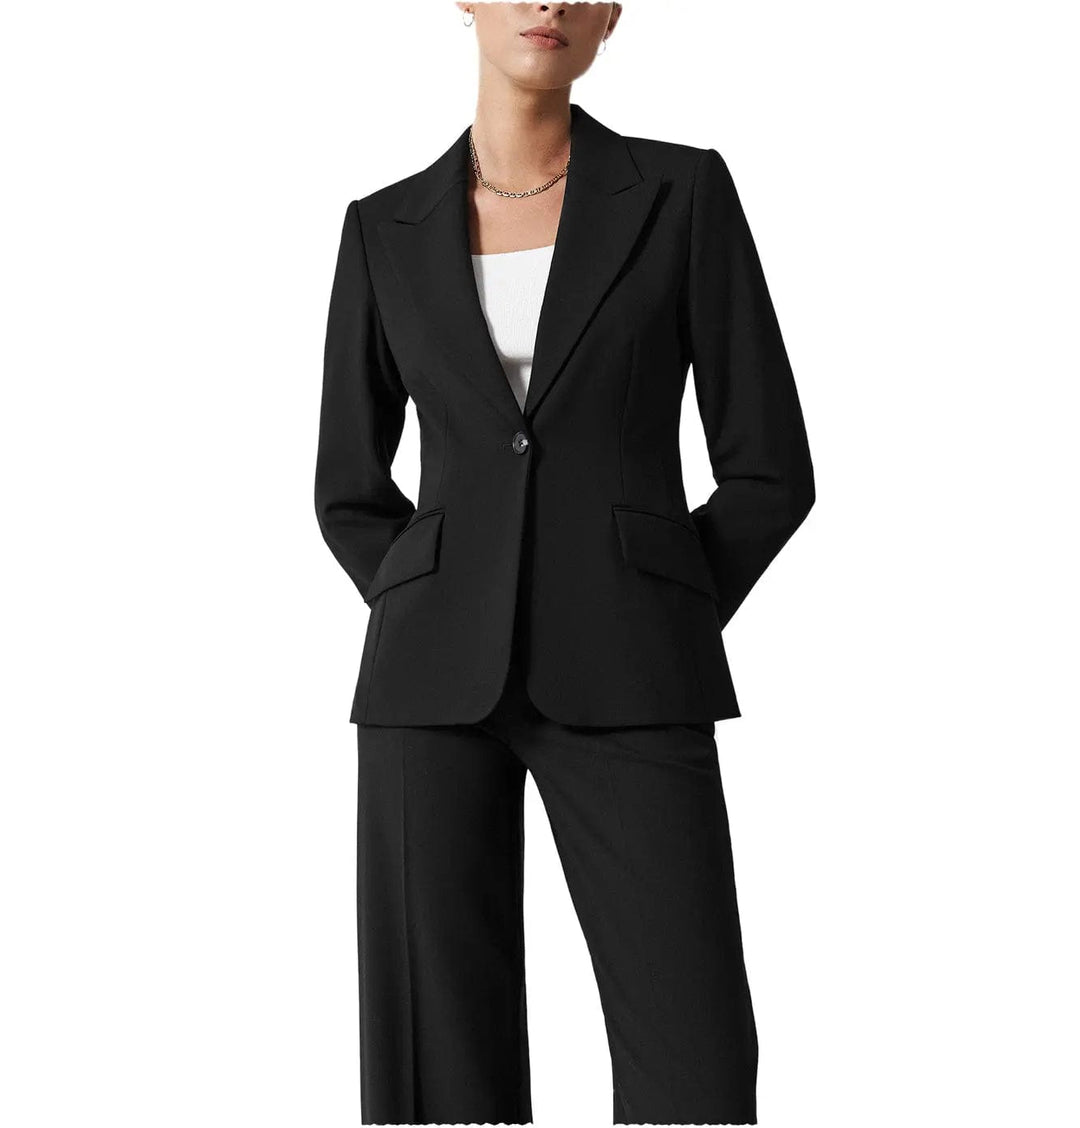 solovedress 2 Pieces Single Button Peak Lapel Women Suit (Blazer+Pants）